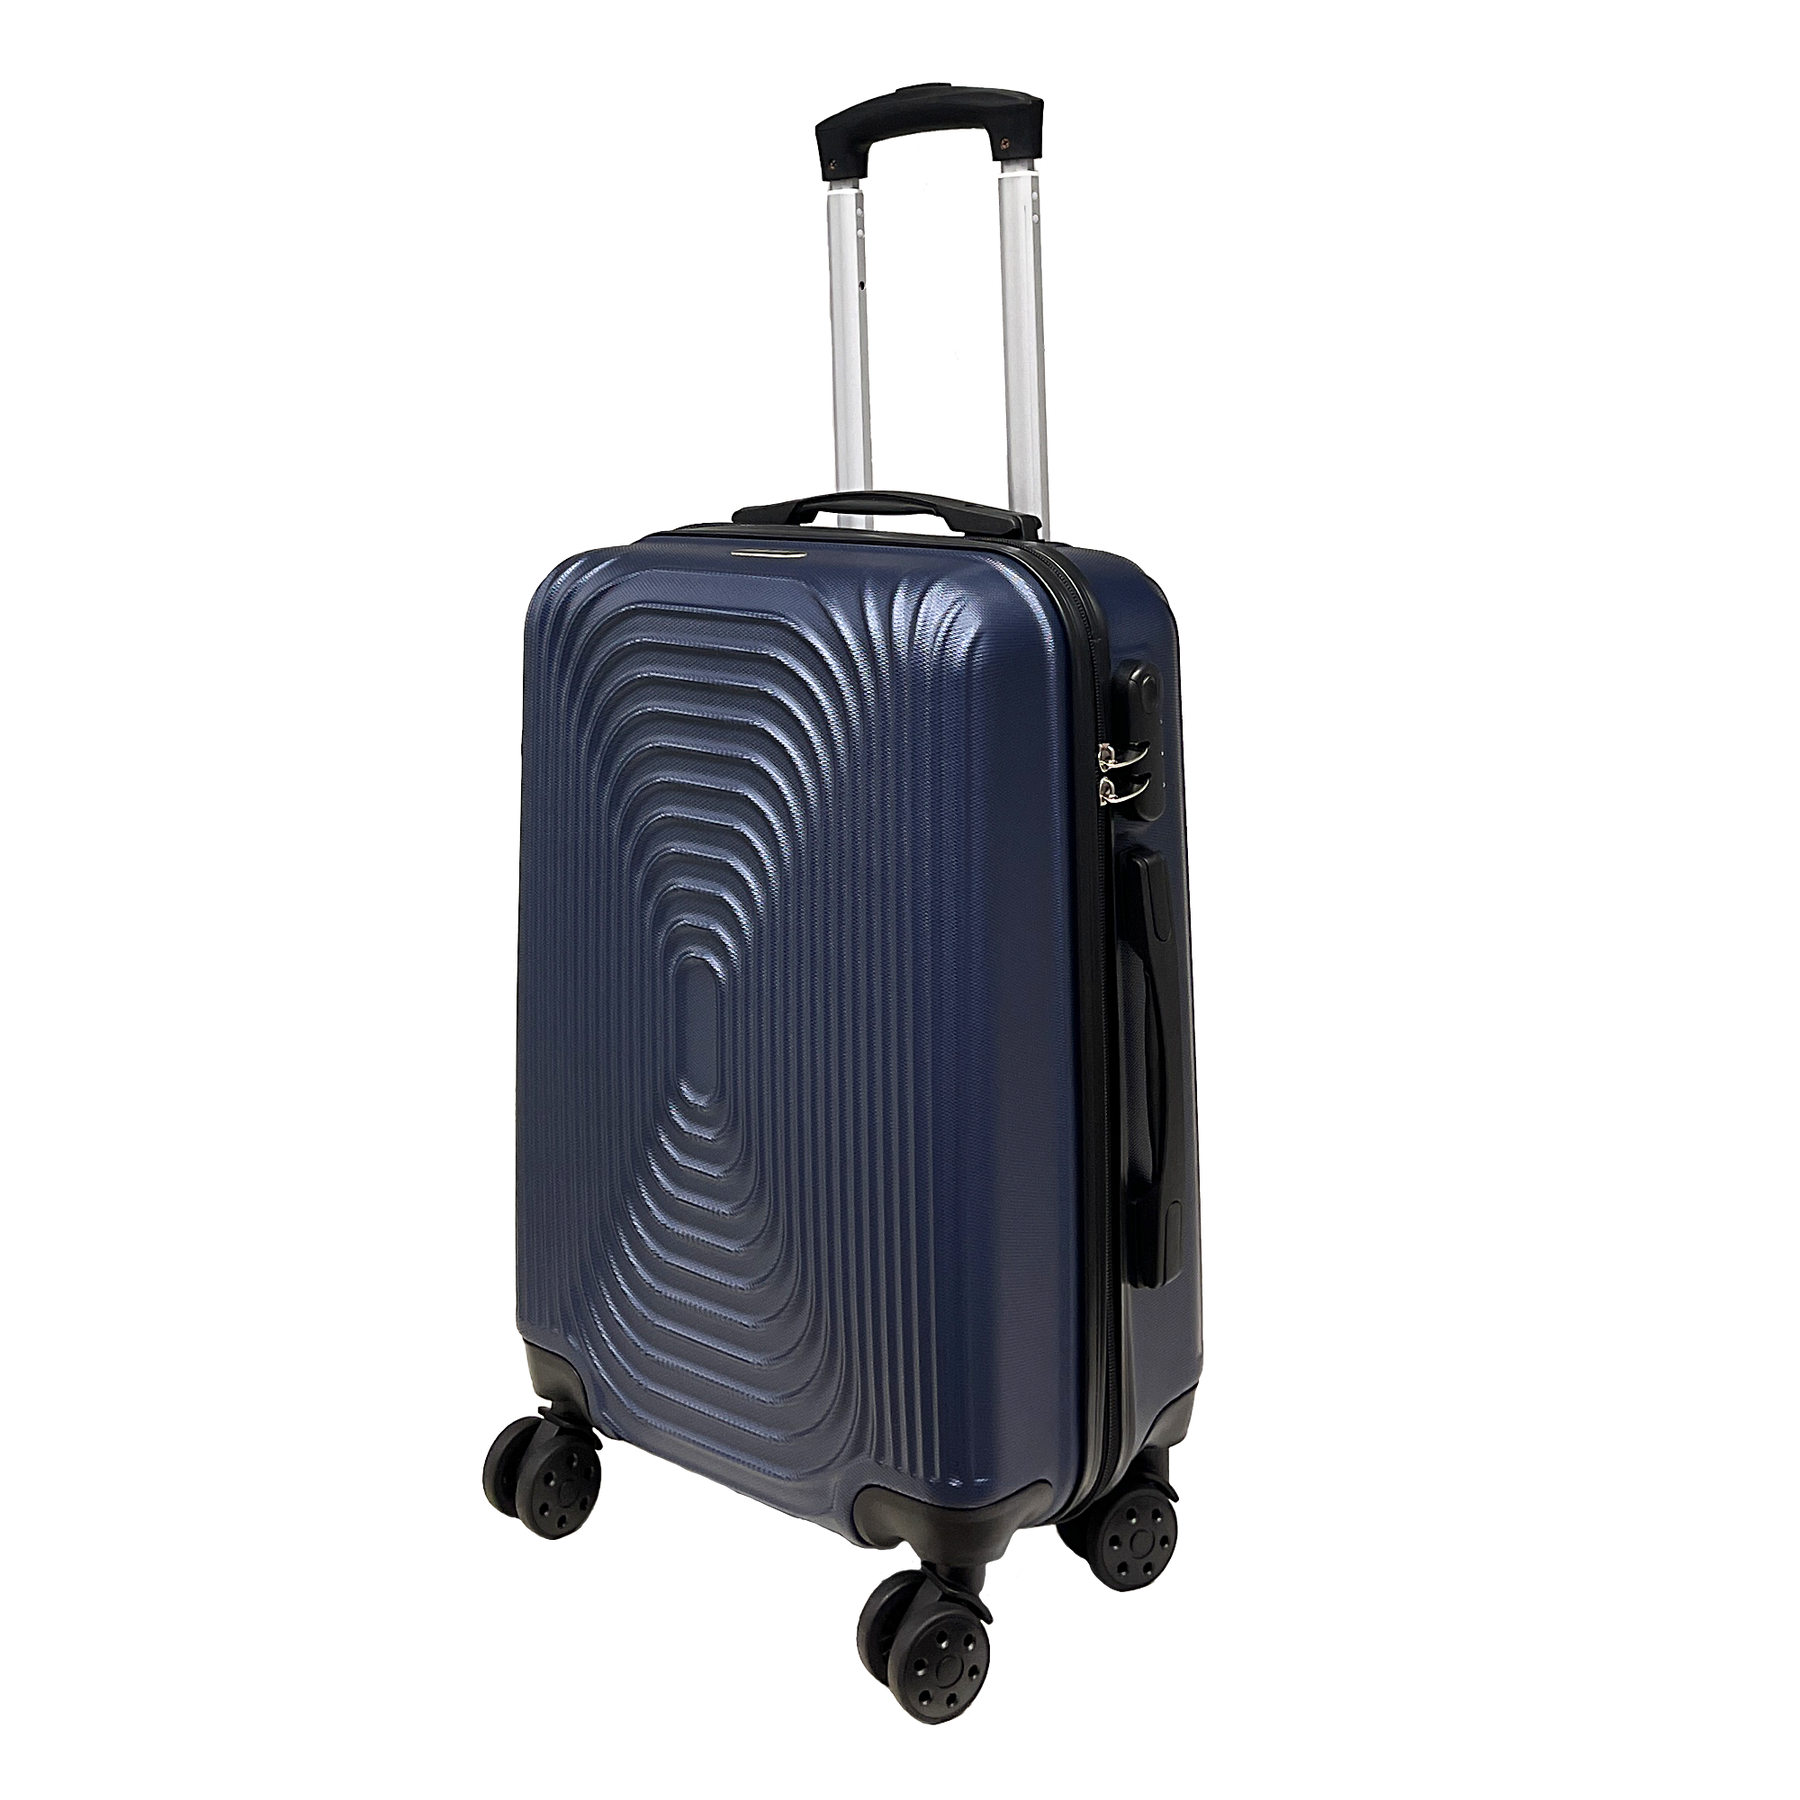 Grands bagages rigoureux durs bagages rigide 55x37x22cm ultra lége